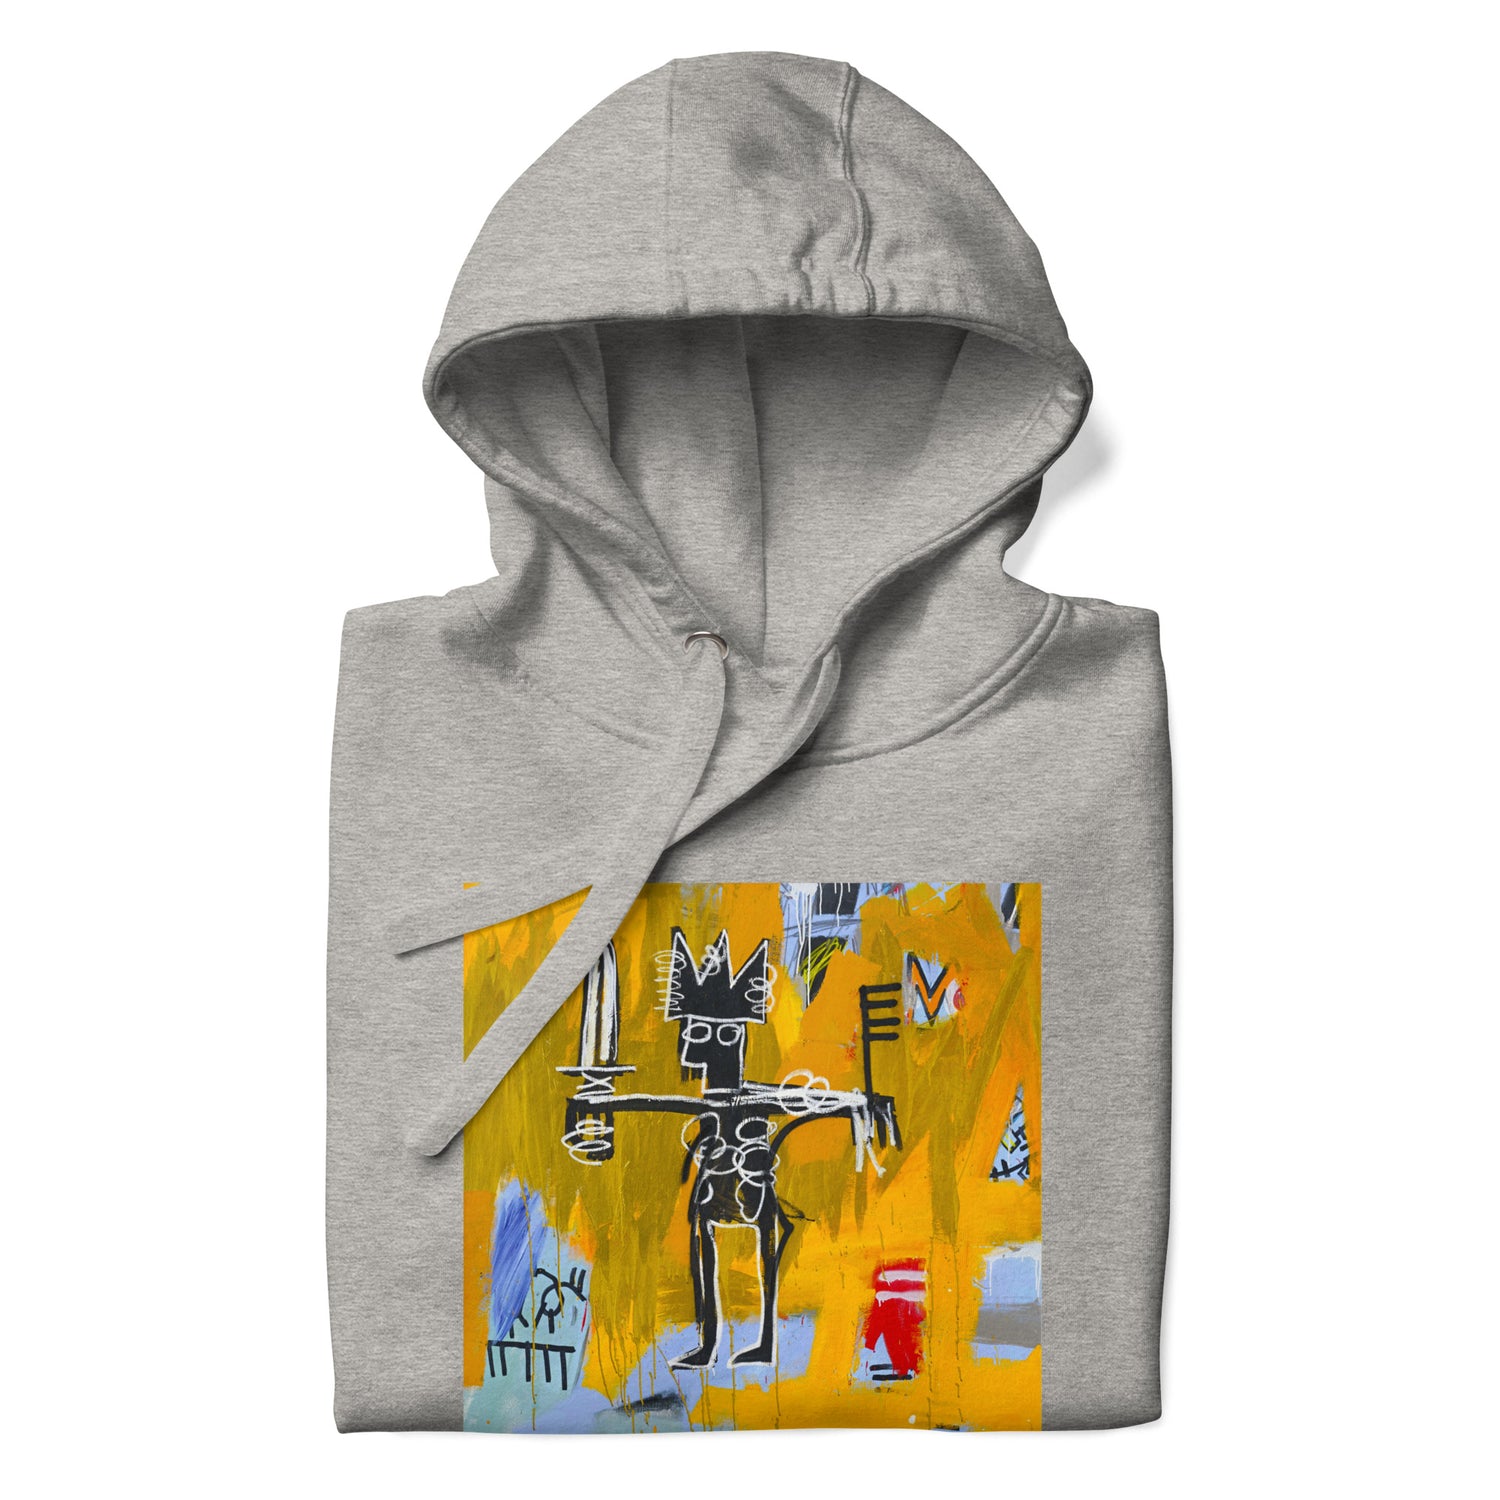 Jean-Michel Basquiat "Julius Caesar on Gold" Artwork Printed Premium Streetwear Sweatshirt Hoodie Grey